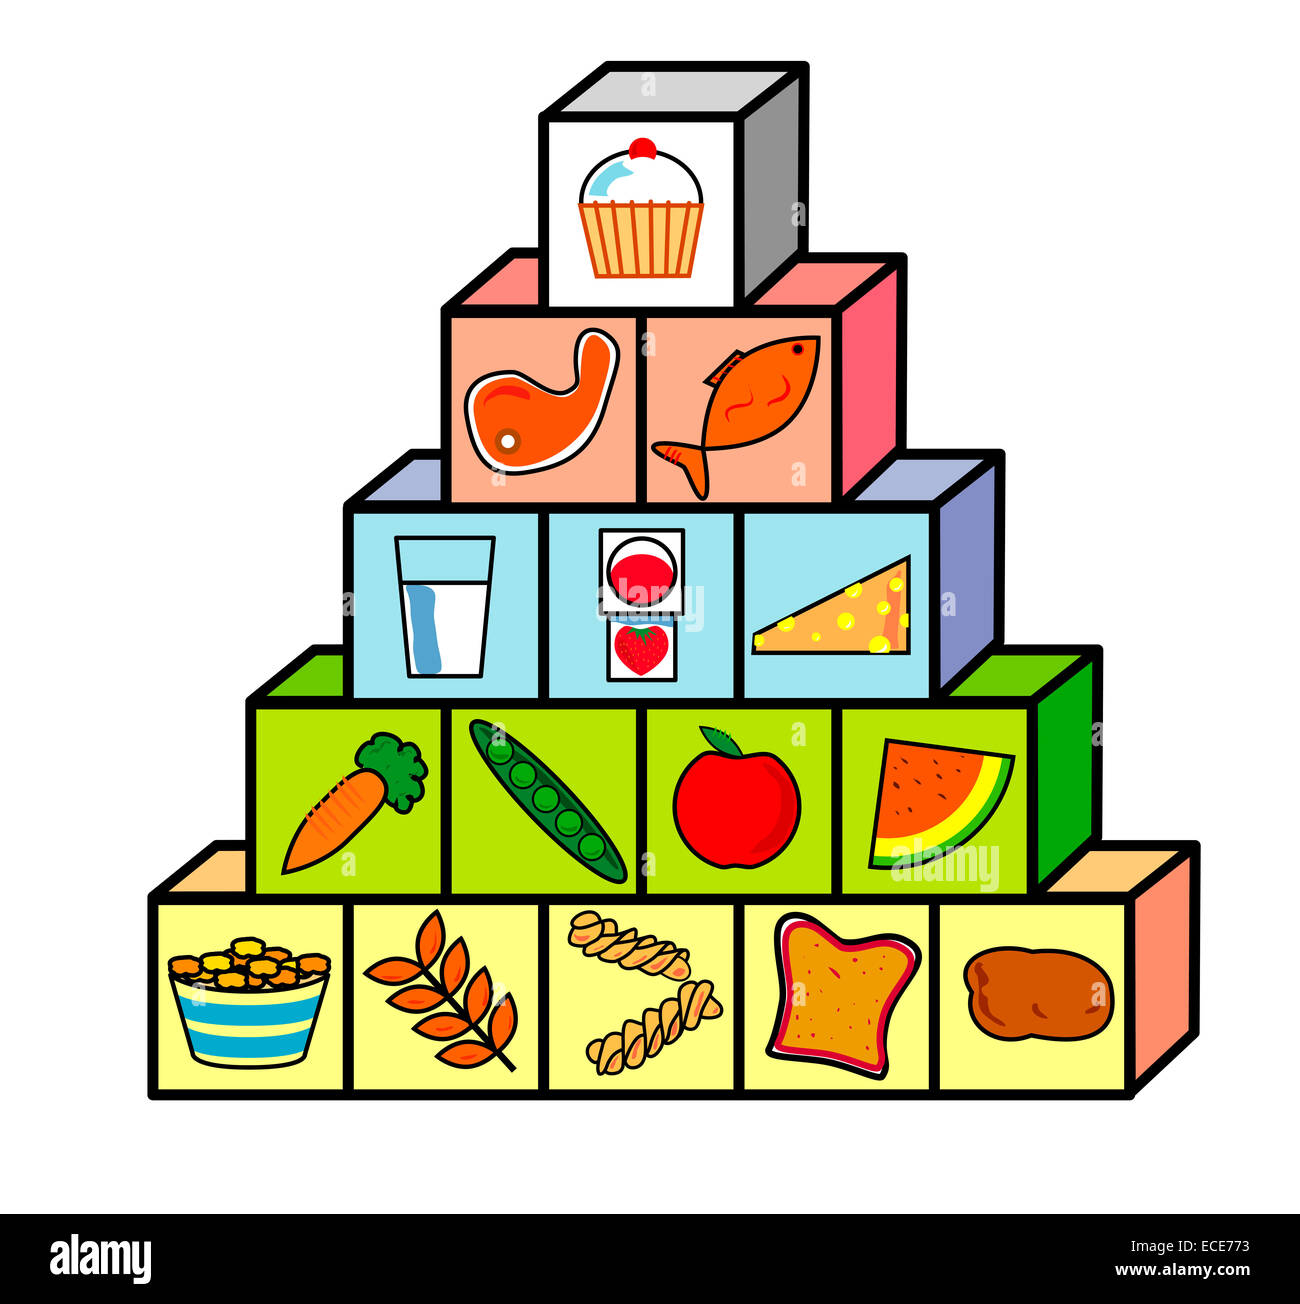 Пищевая пирамида для детей